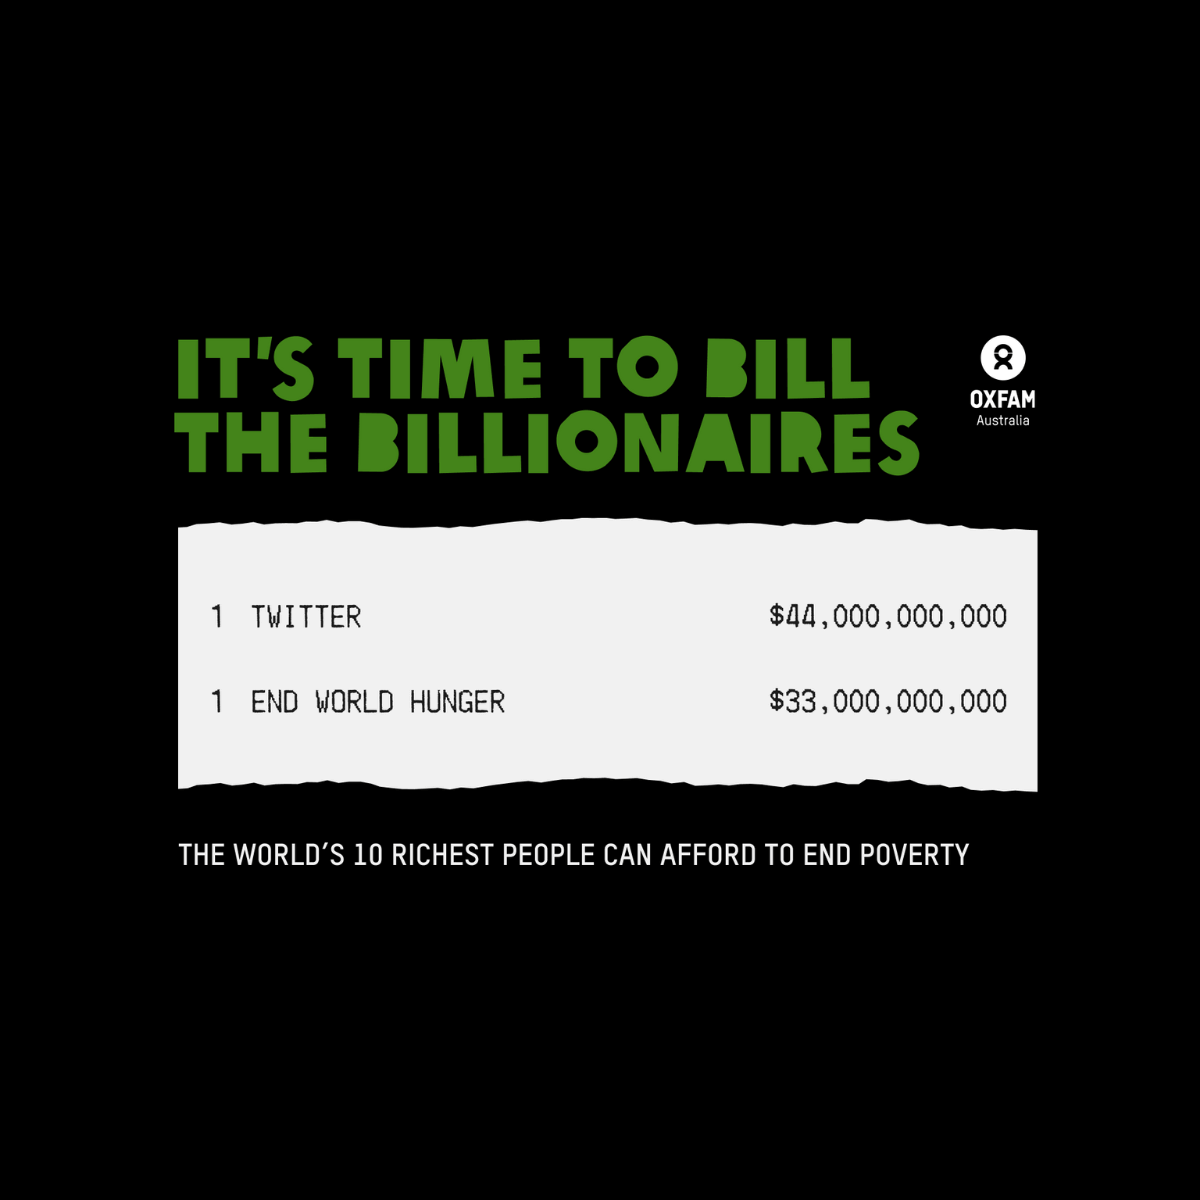 Trillion dollar bill campaign